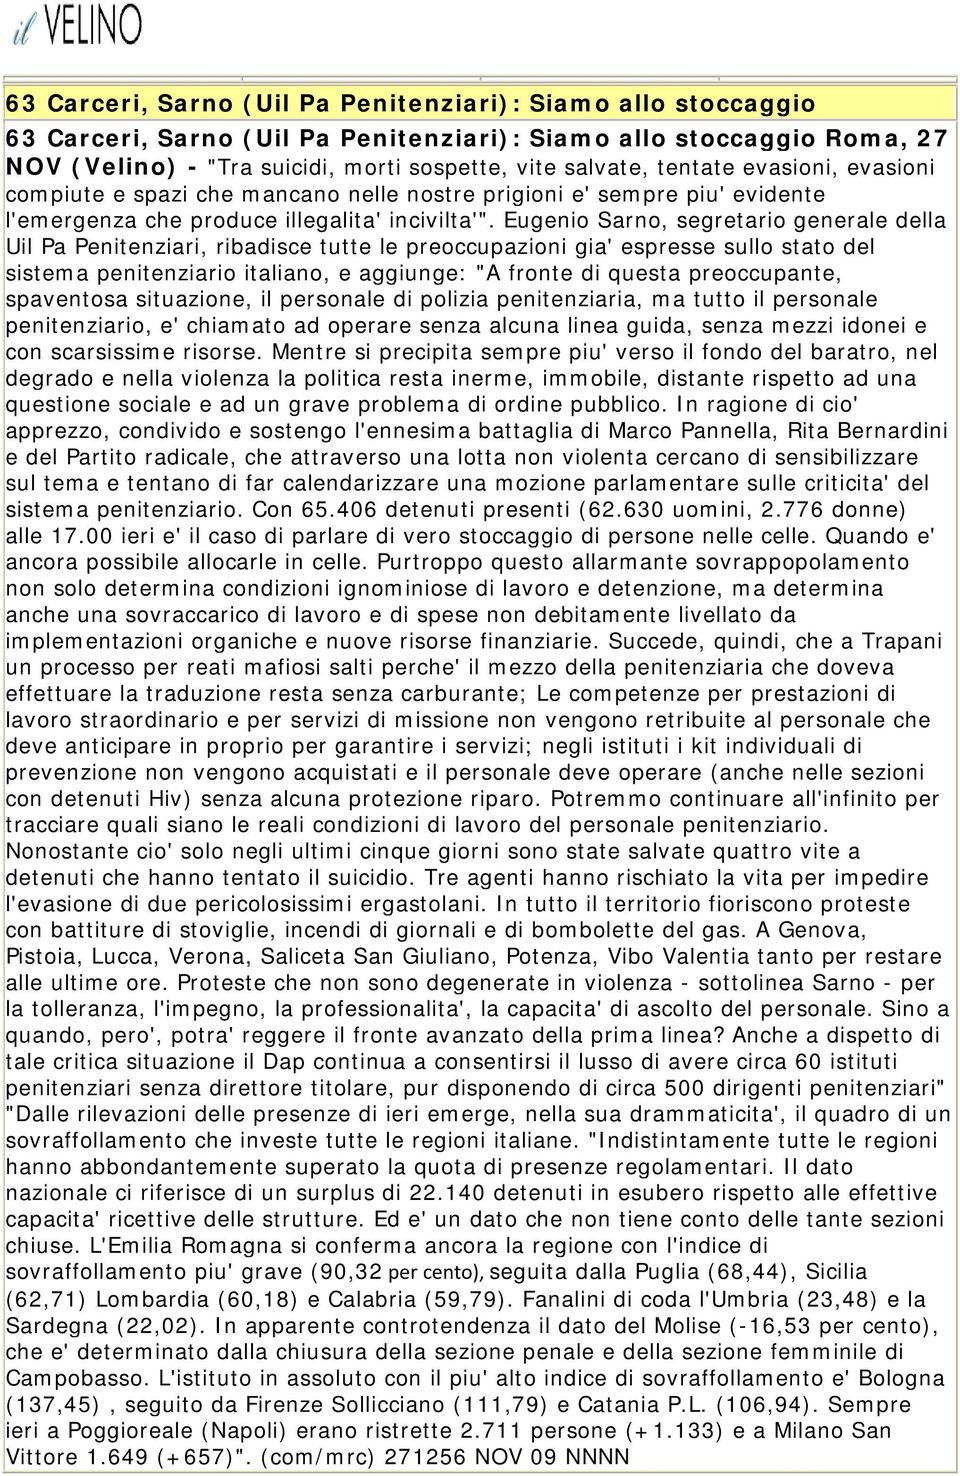 Eugenio Sarno, segretario generale della Uil Pa Penitenziari, ribadisce tutte le preoccupazioni gia' espresse sullo stato del sistema penitenziario italiano, e aggiunge: "A fronte di questa